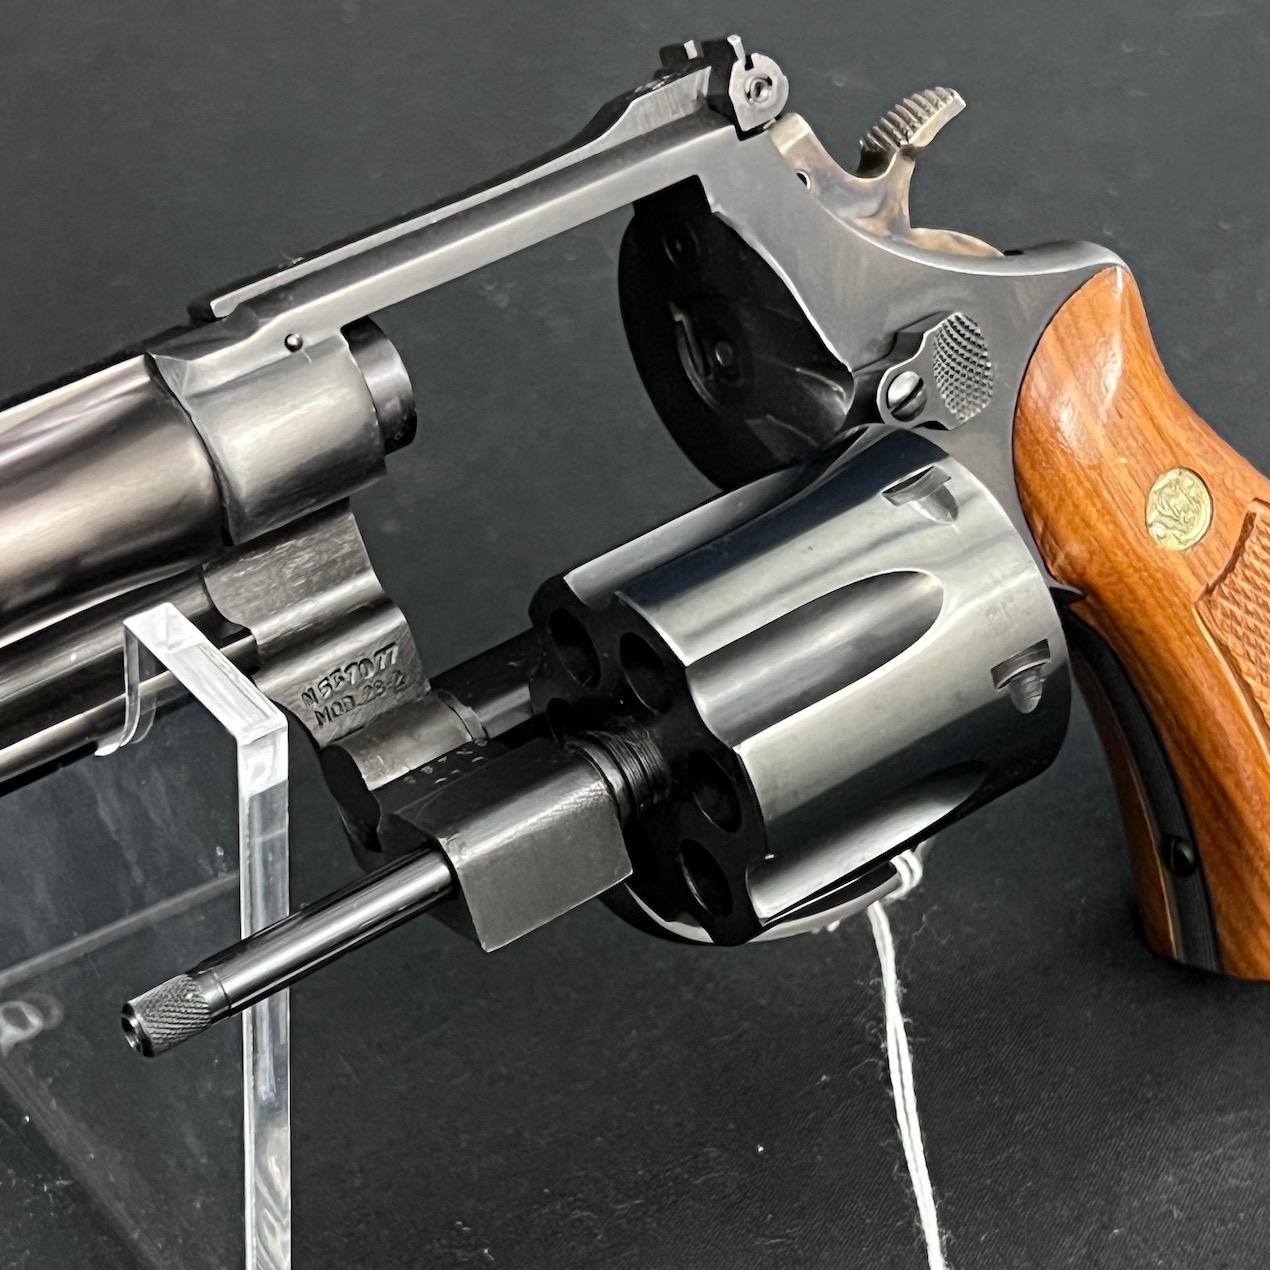 Smith & Wesson Highway Patrolman Model 28 Revolver